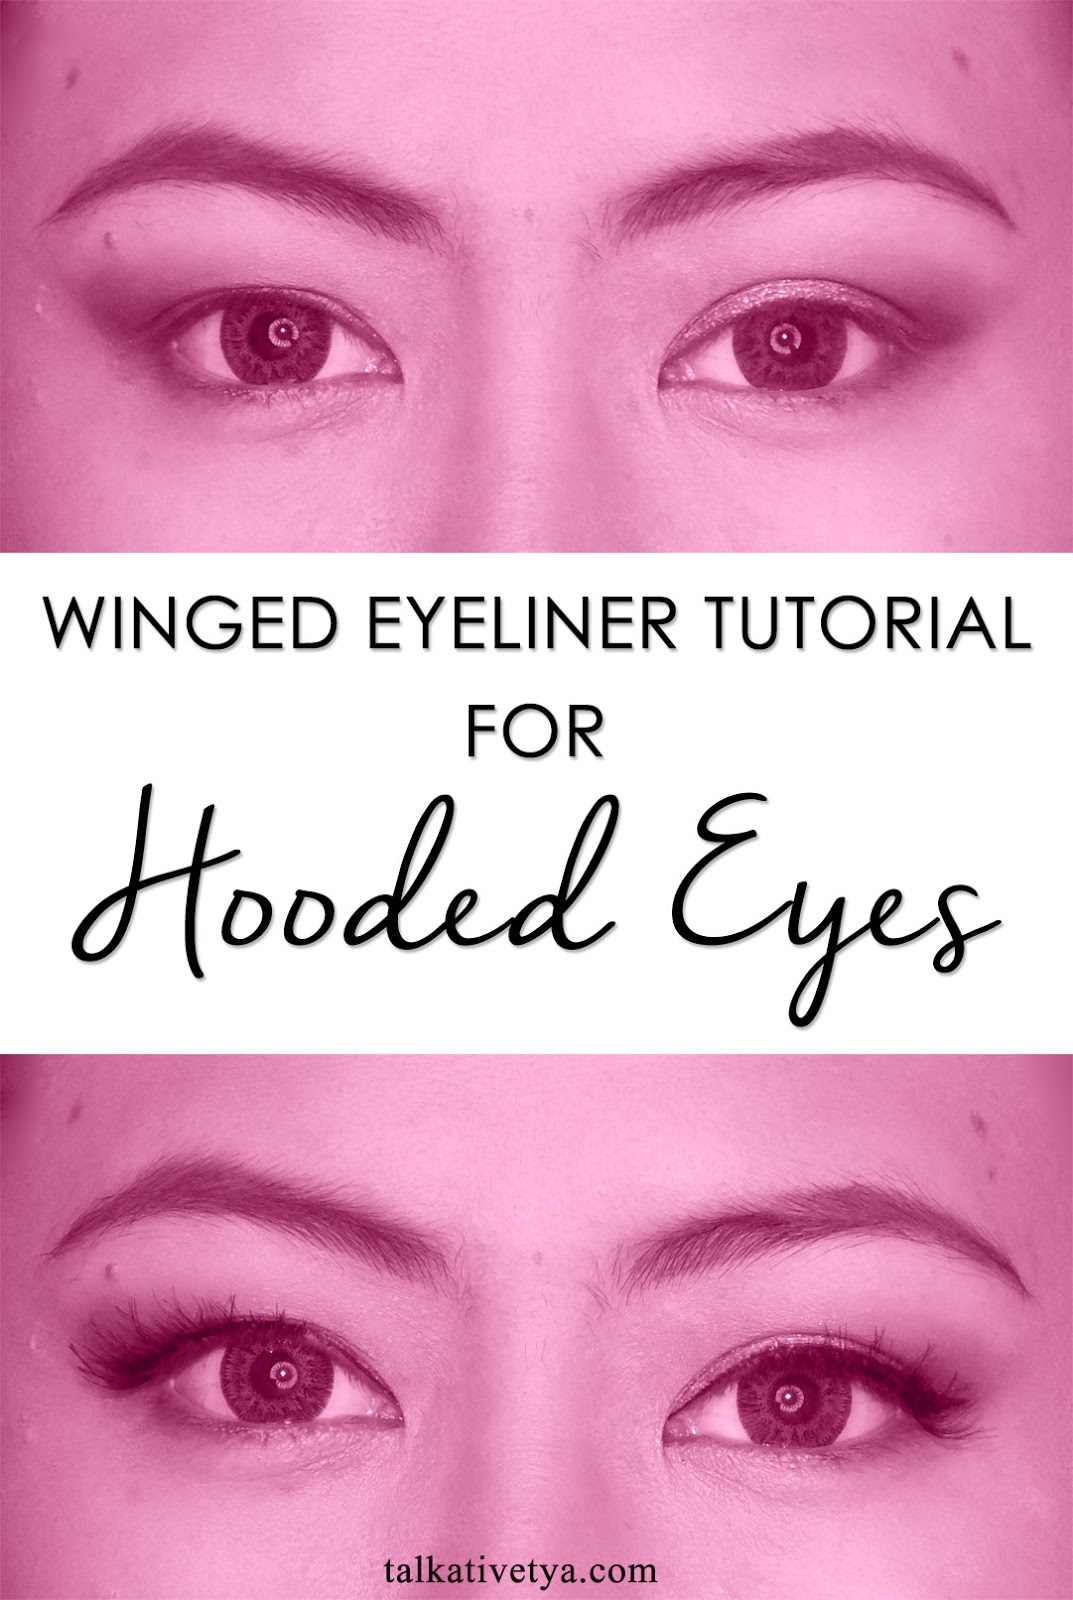 Winged Eyeliner Tutorial For Hooded Eyes Talkative Tya